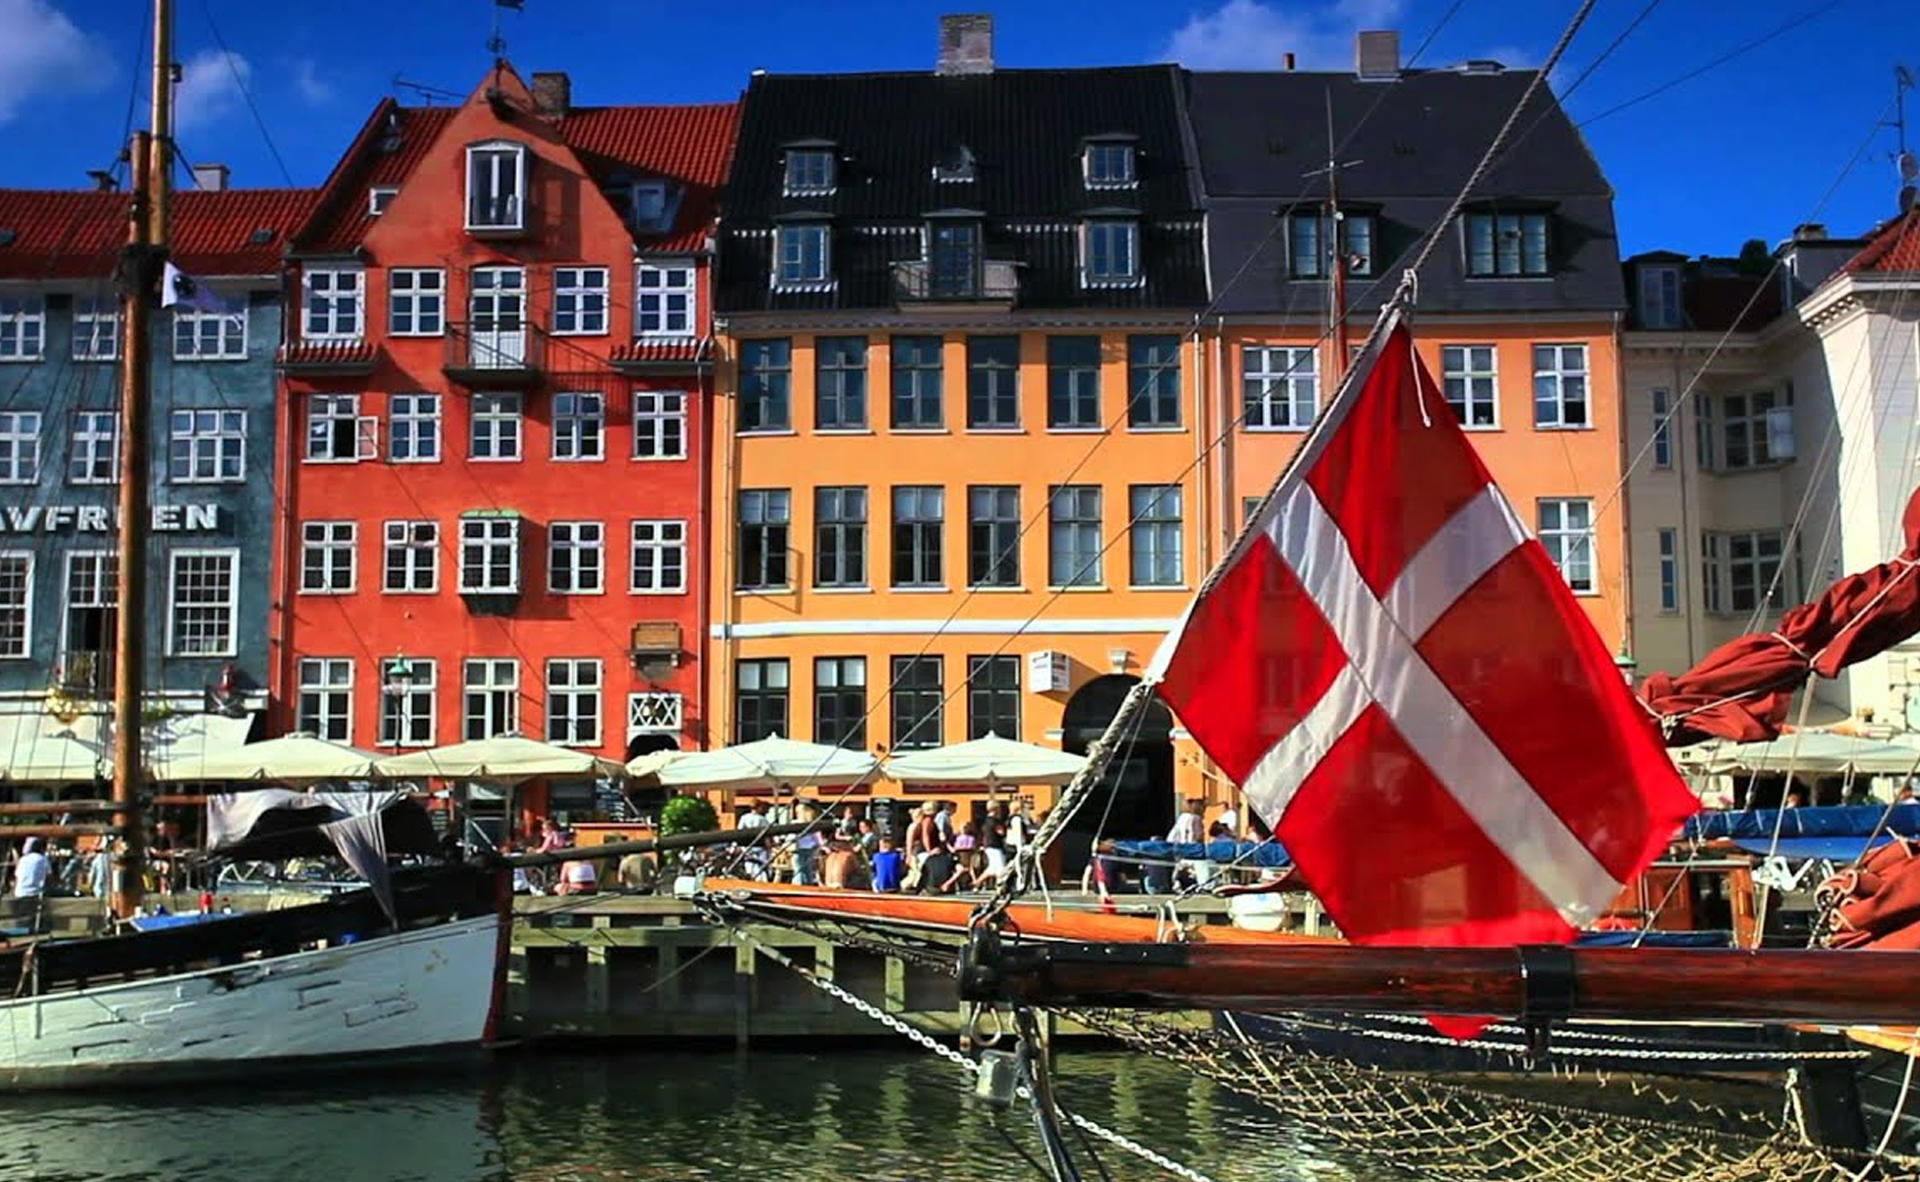 인공조림지를 가진 덴마크의 문화와 기후